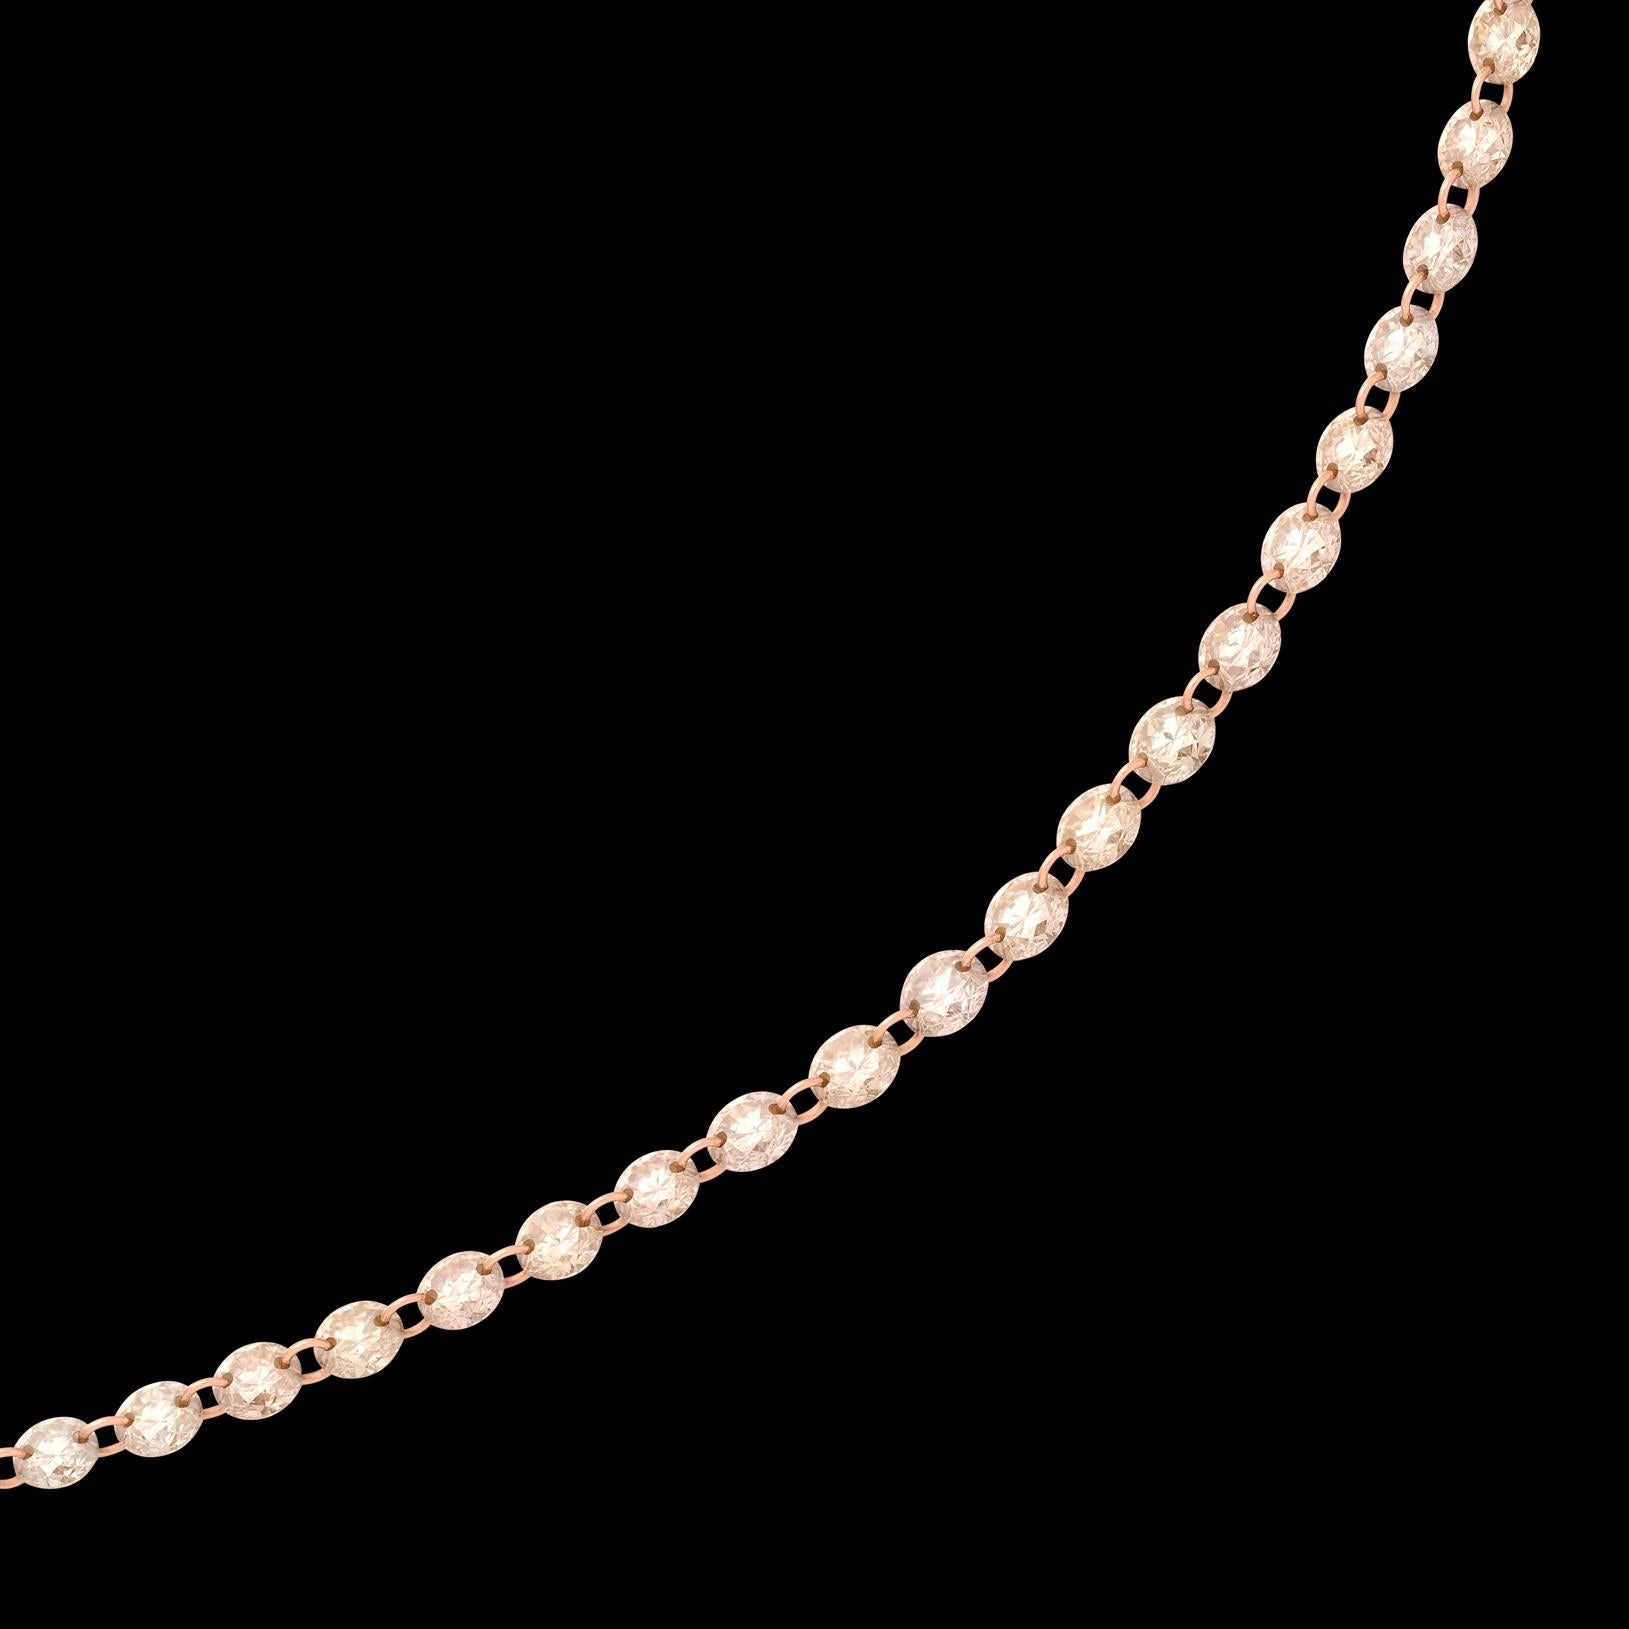 Votre nouveau collier préféré ! Ce bijou en or rose 18 carats est orné de 84 diamants briolettes taillés par des experts, pour un poids total de 4,10 carats. Les diamants sont reliés à l'or rose par de minuscules trous de forage sur le bord de